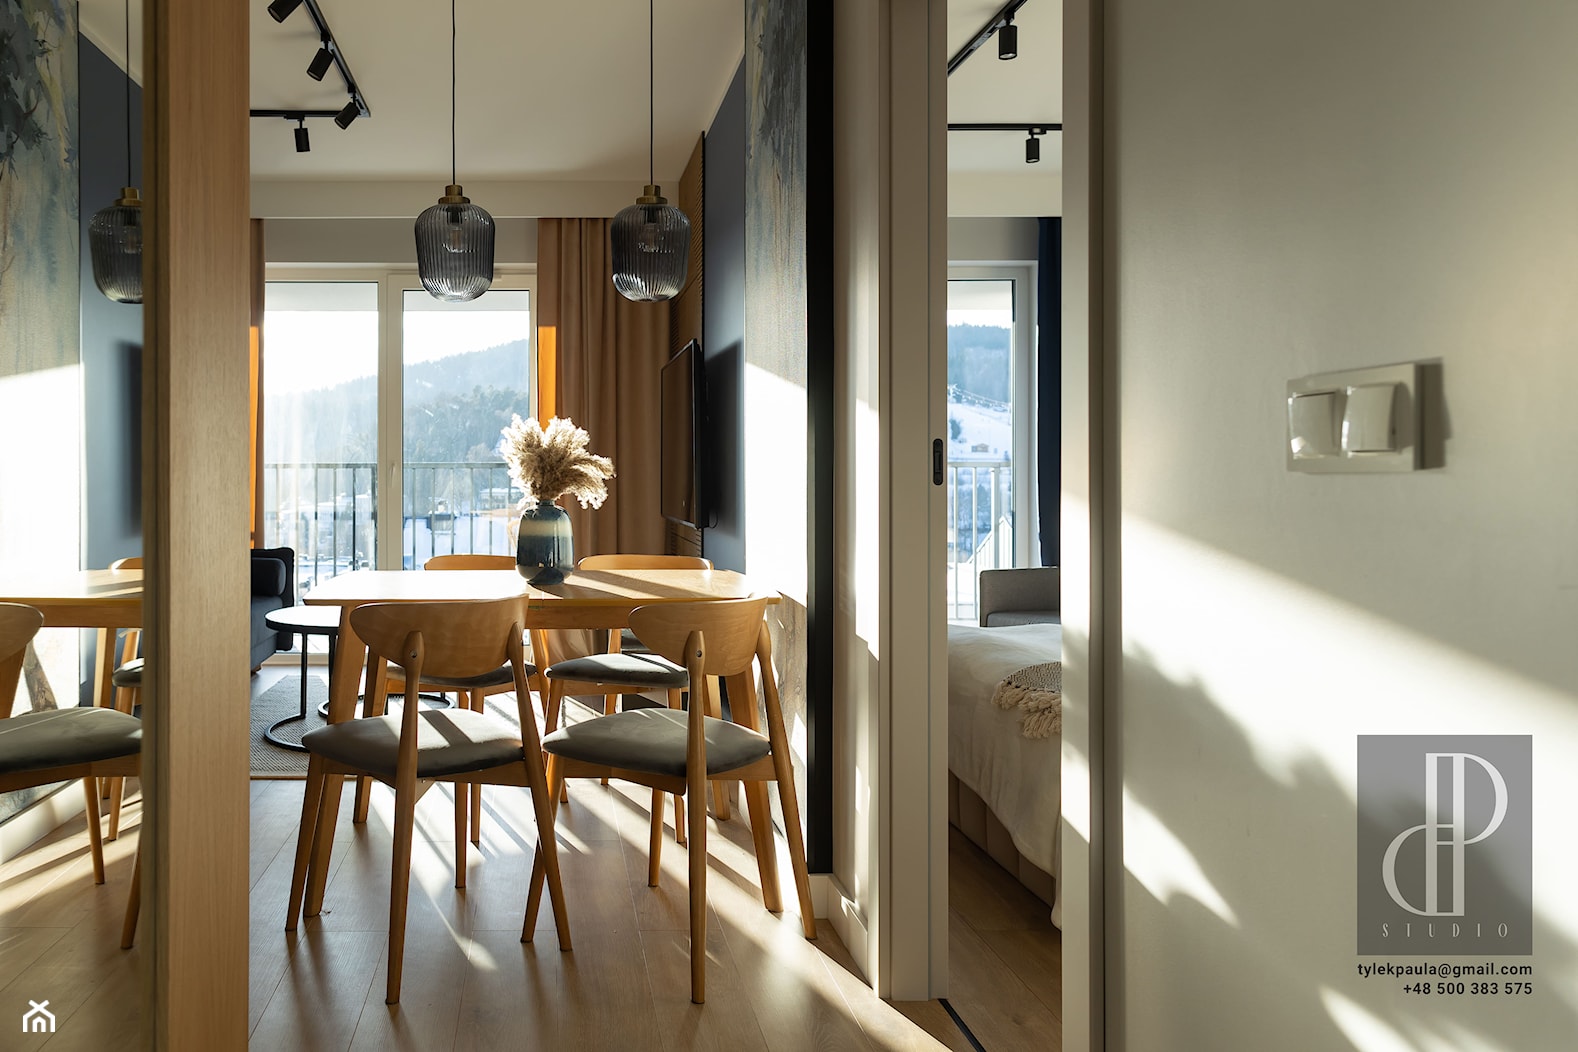 Jadalnia - mała, niebieska, z aneksem kuchennym, krzesła dąb, przytulna - zdjęcie od M8 Studio - Paula Tylek - Homebook